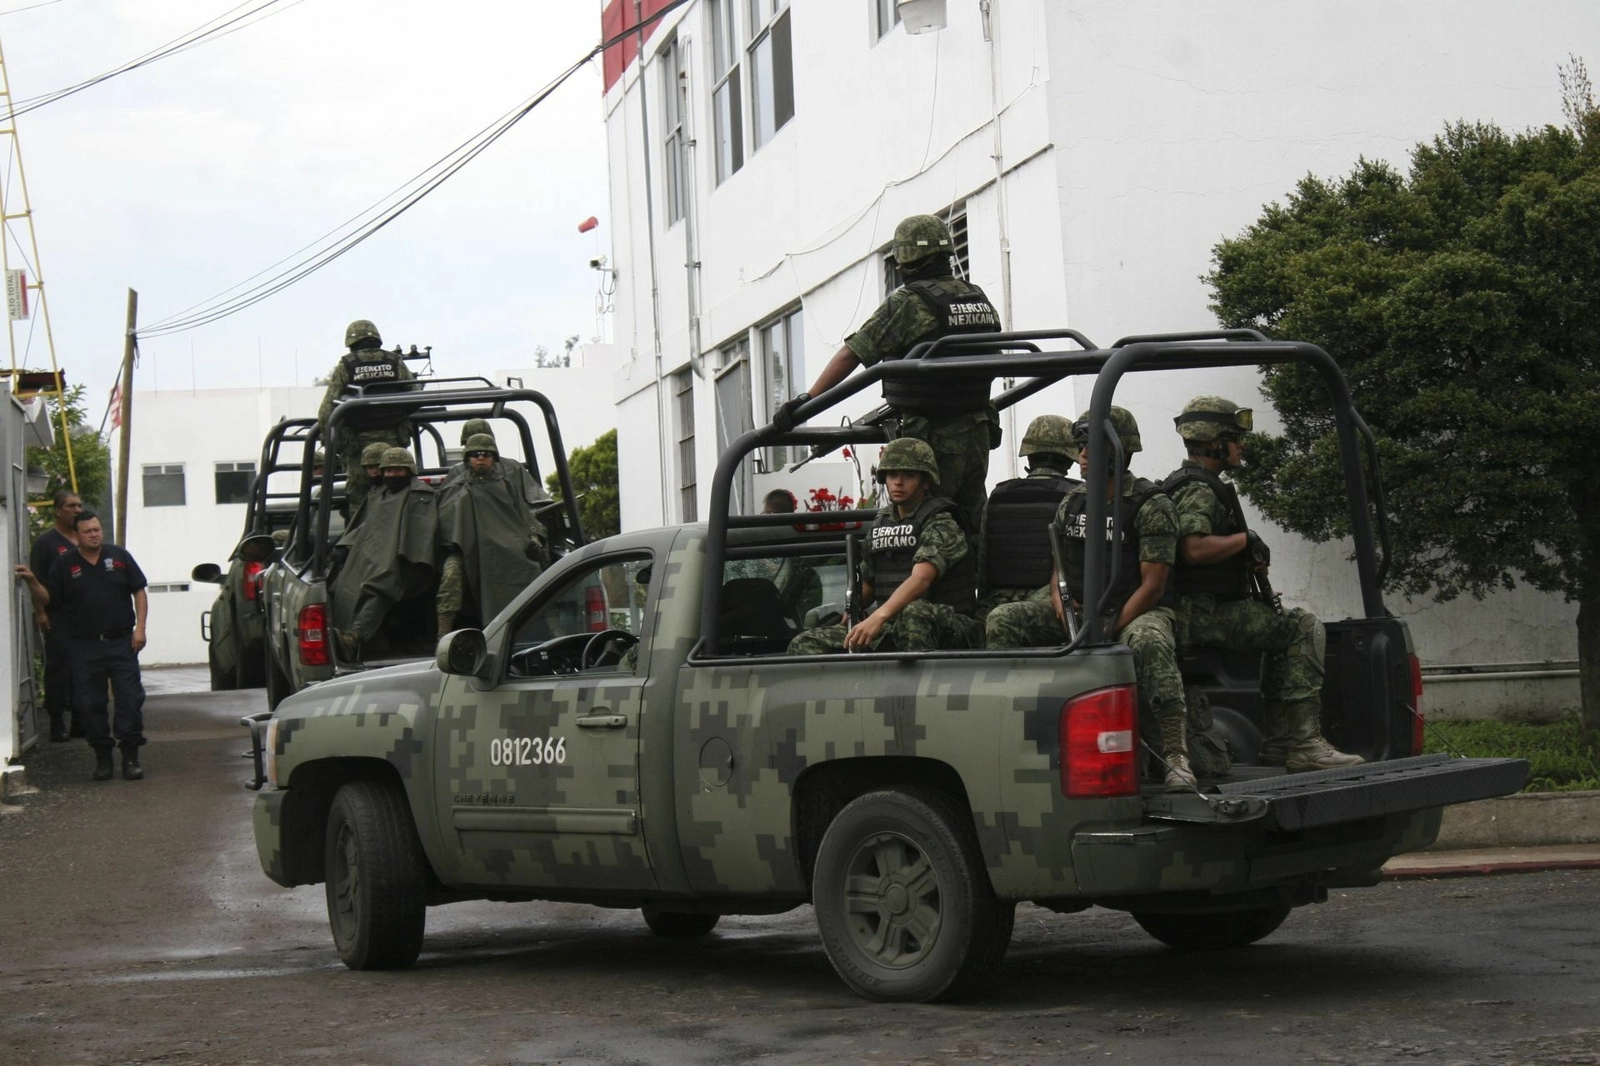 Nuevos enfrentamientos en Michoacan extraoficial - Página 5 Presuntos-sicarios-y-soldados-se-enfrentan-en-mugica-michoacan-3692html-michoacanjpg-9078html-adda22f2-5b58-40b4-ab8e-9a2dc67ab7d4